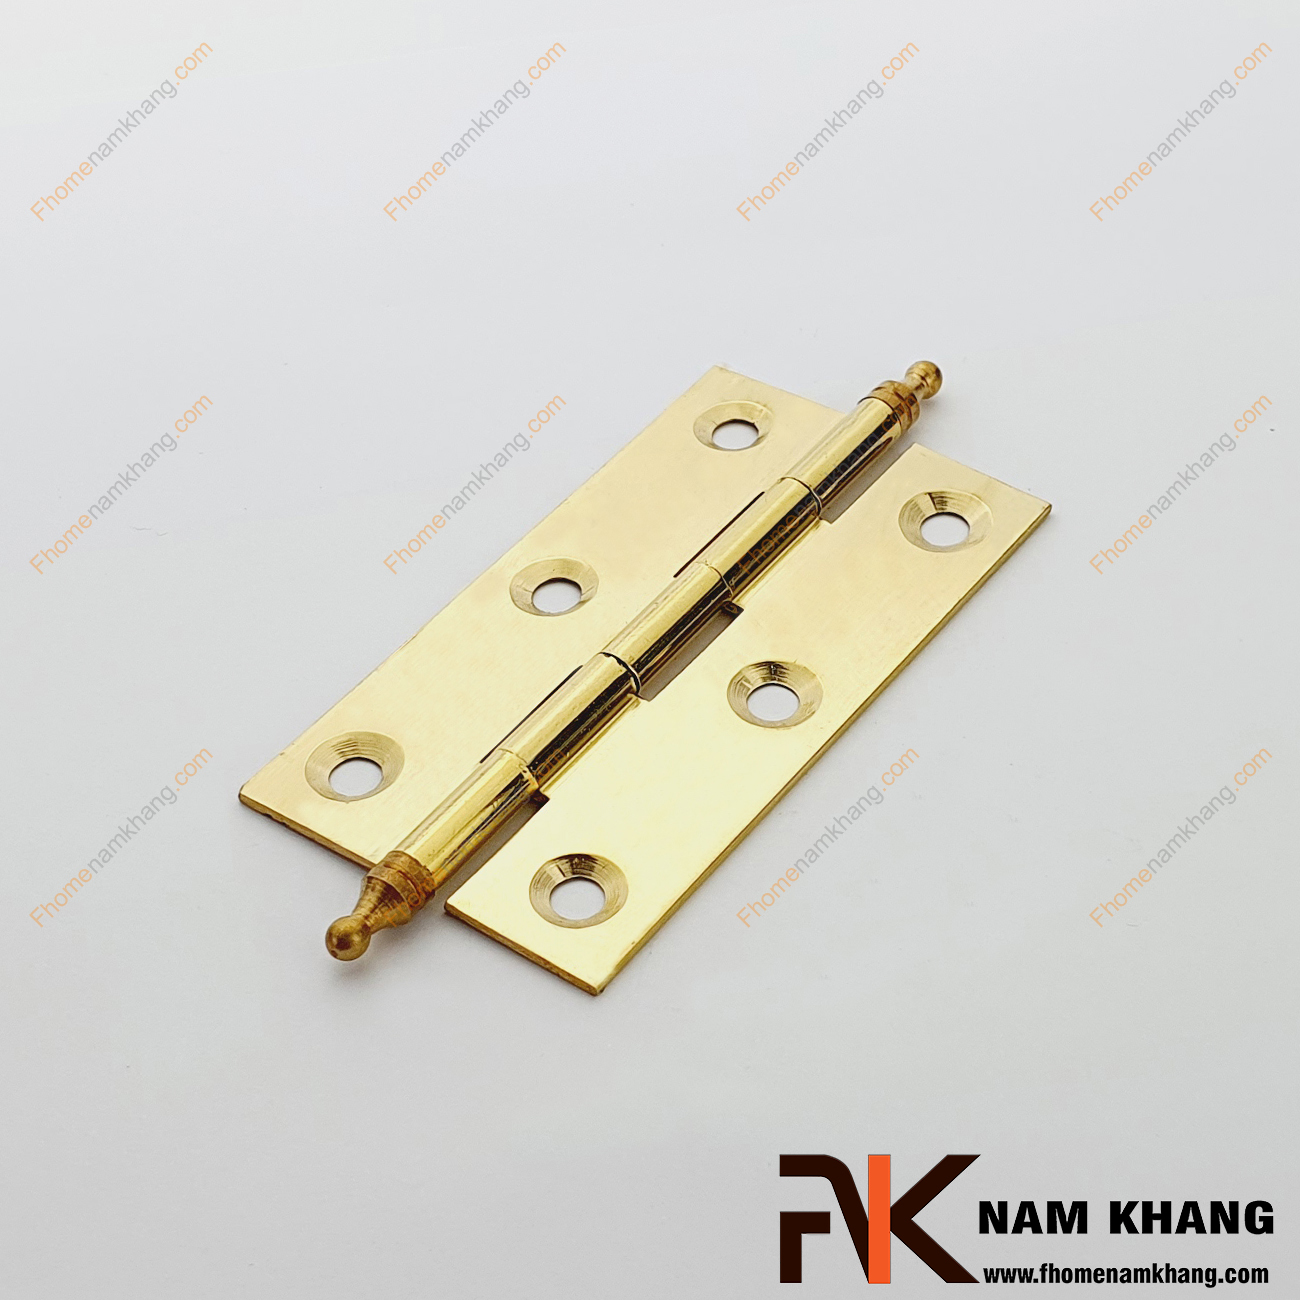 Bản lề tủ dạng trơn màu đồng vàng NK471M-8FDO được sản xuất từ đồng cao cấp, size nhỏ chuyên dùng cho các dạng tủ kệ nhỏ, cánh cửa tủ, cánh hộp gỗ, cánh thùng gỗ và hộp quà tặng.